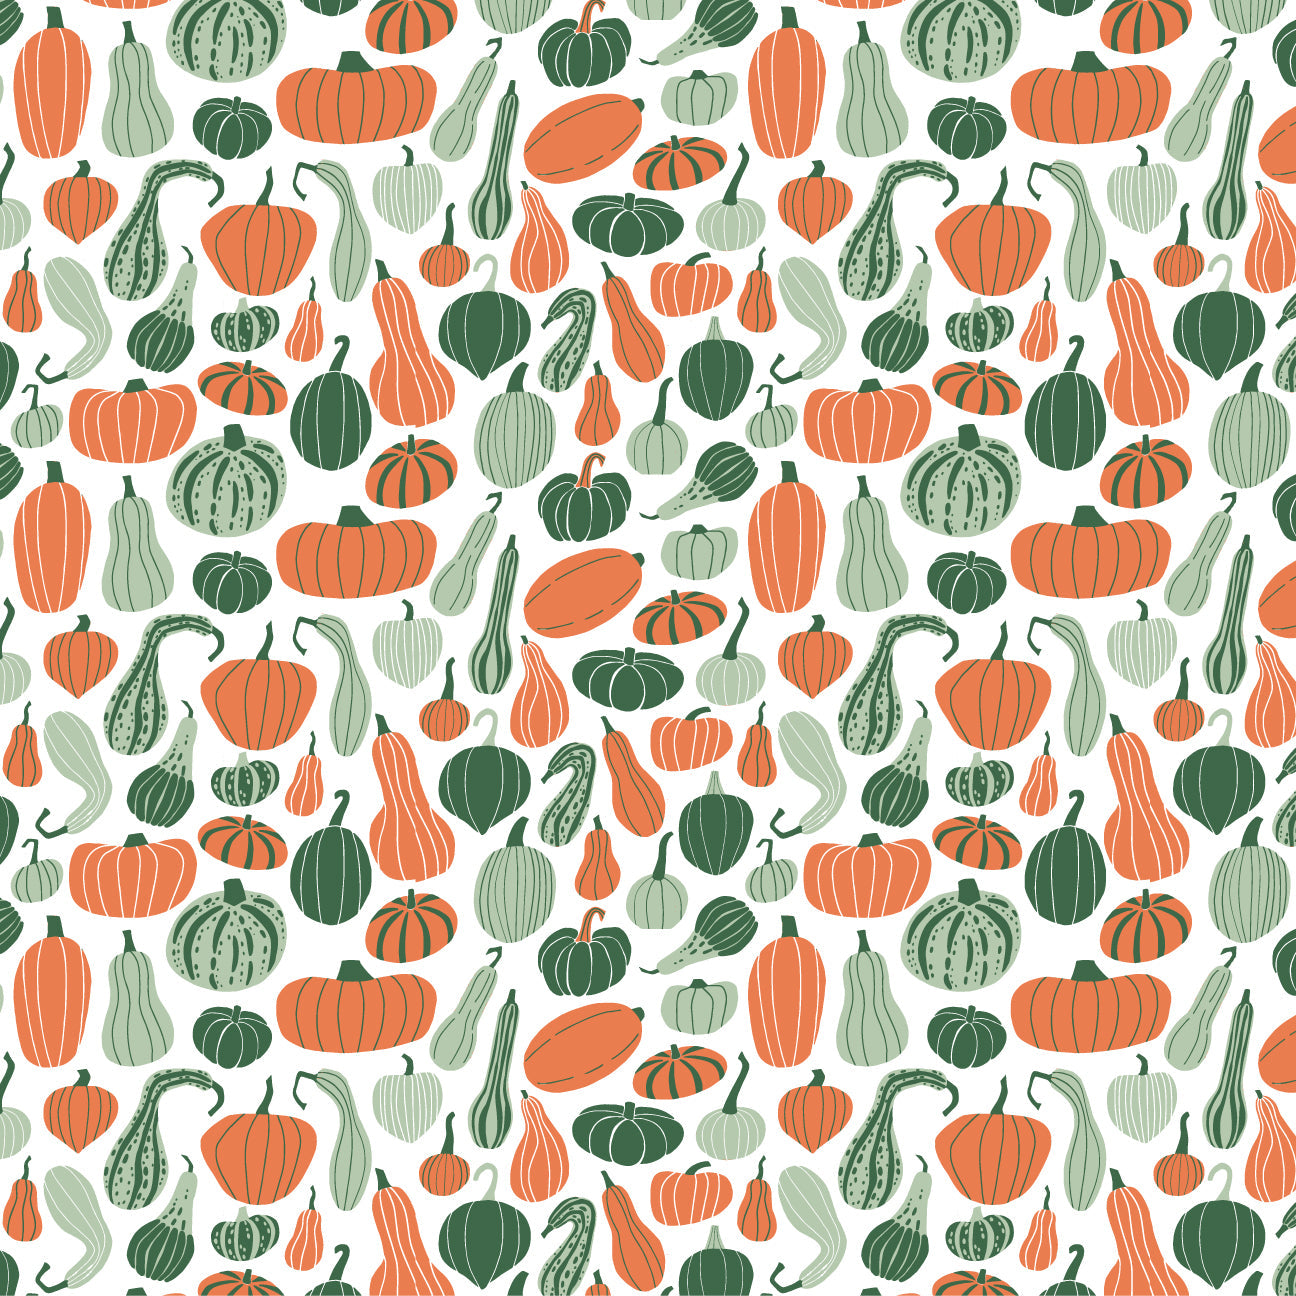 Sweatshirt - Gourds & Pumpkins Green & Orange